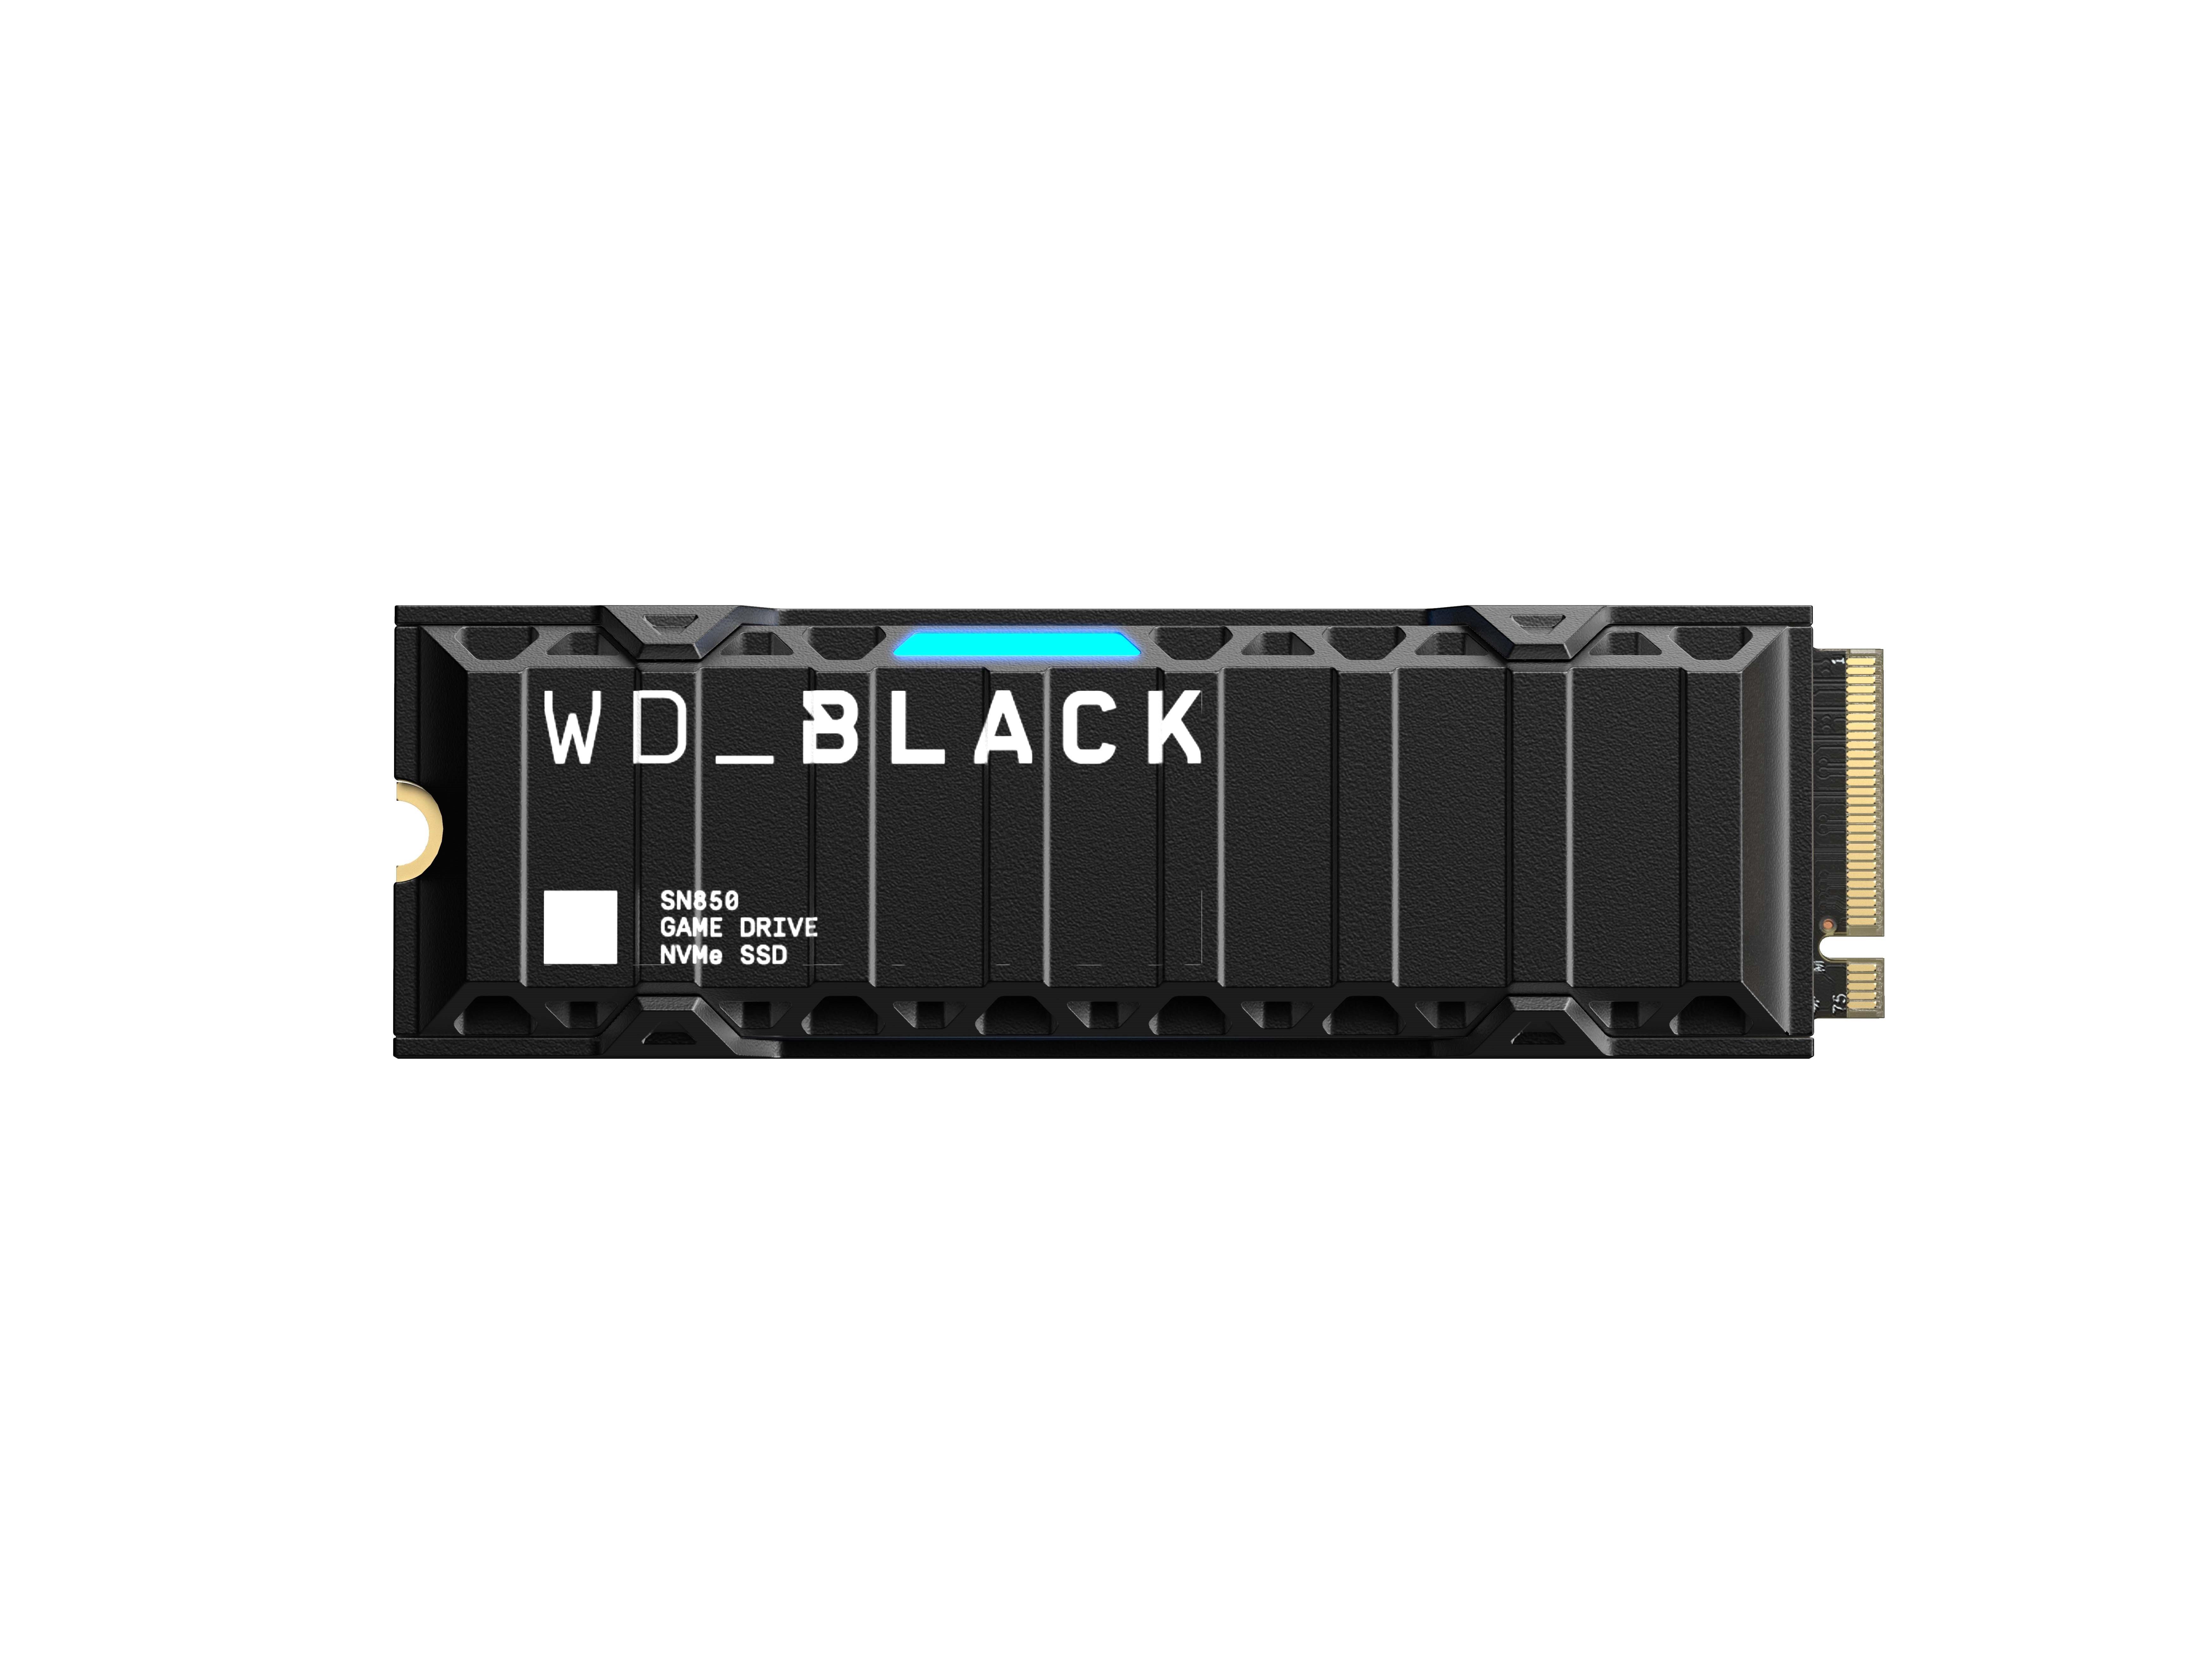 WD_BLACK 1TB SN850 NVMe SSD | GameStop